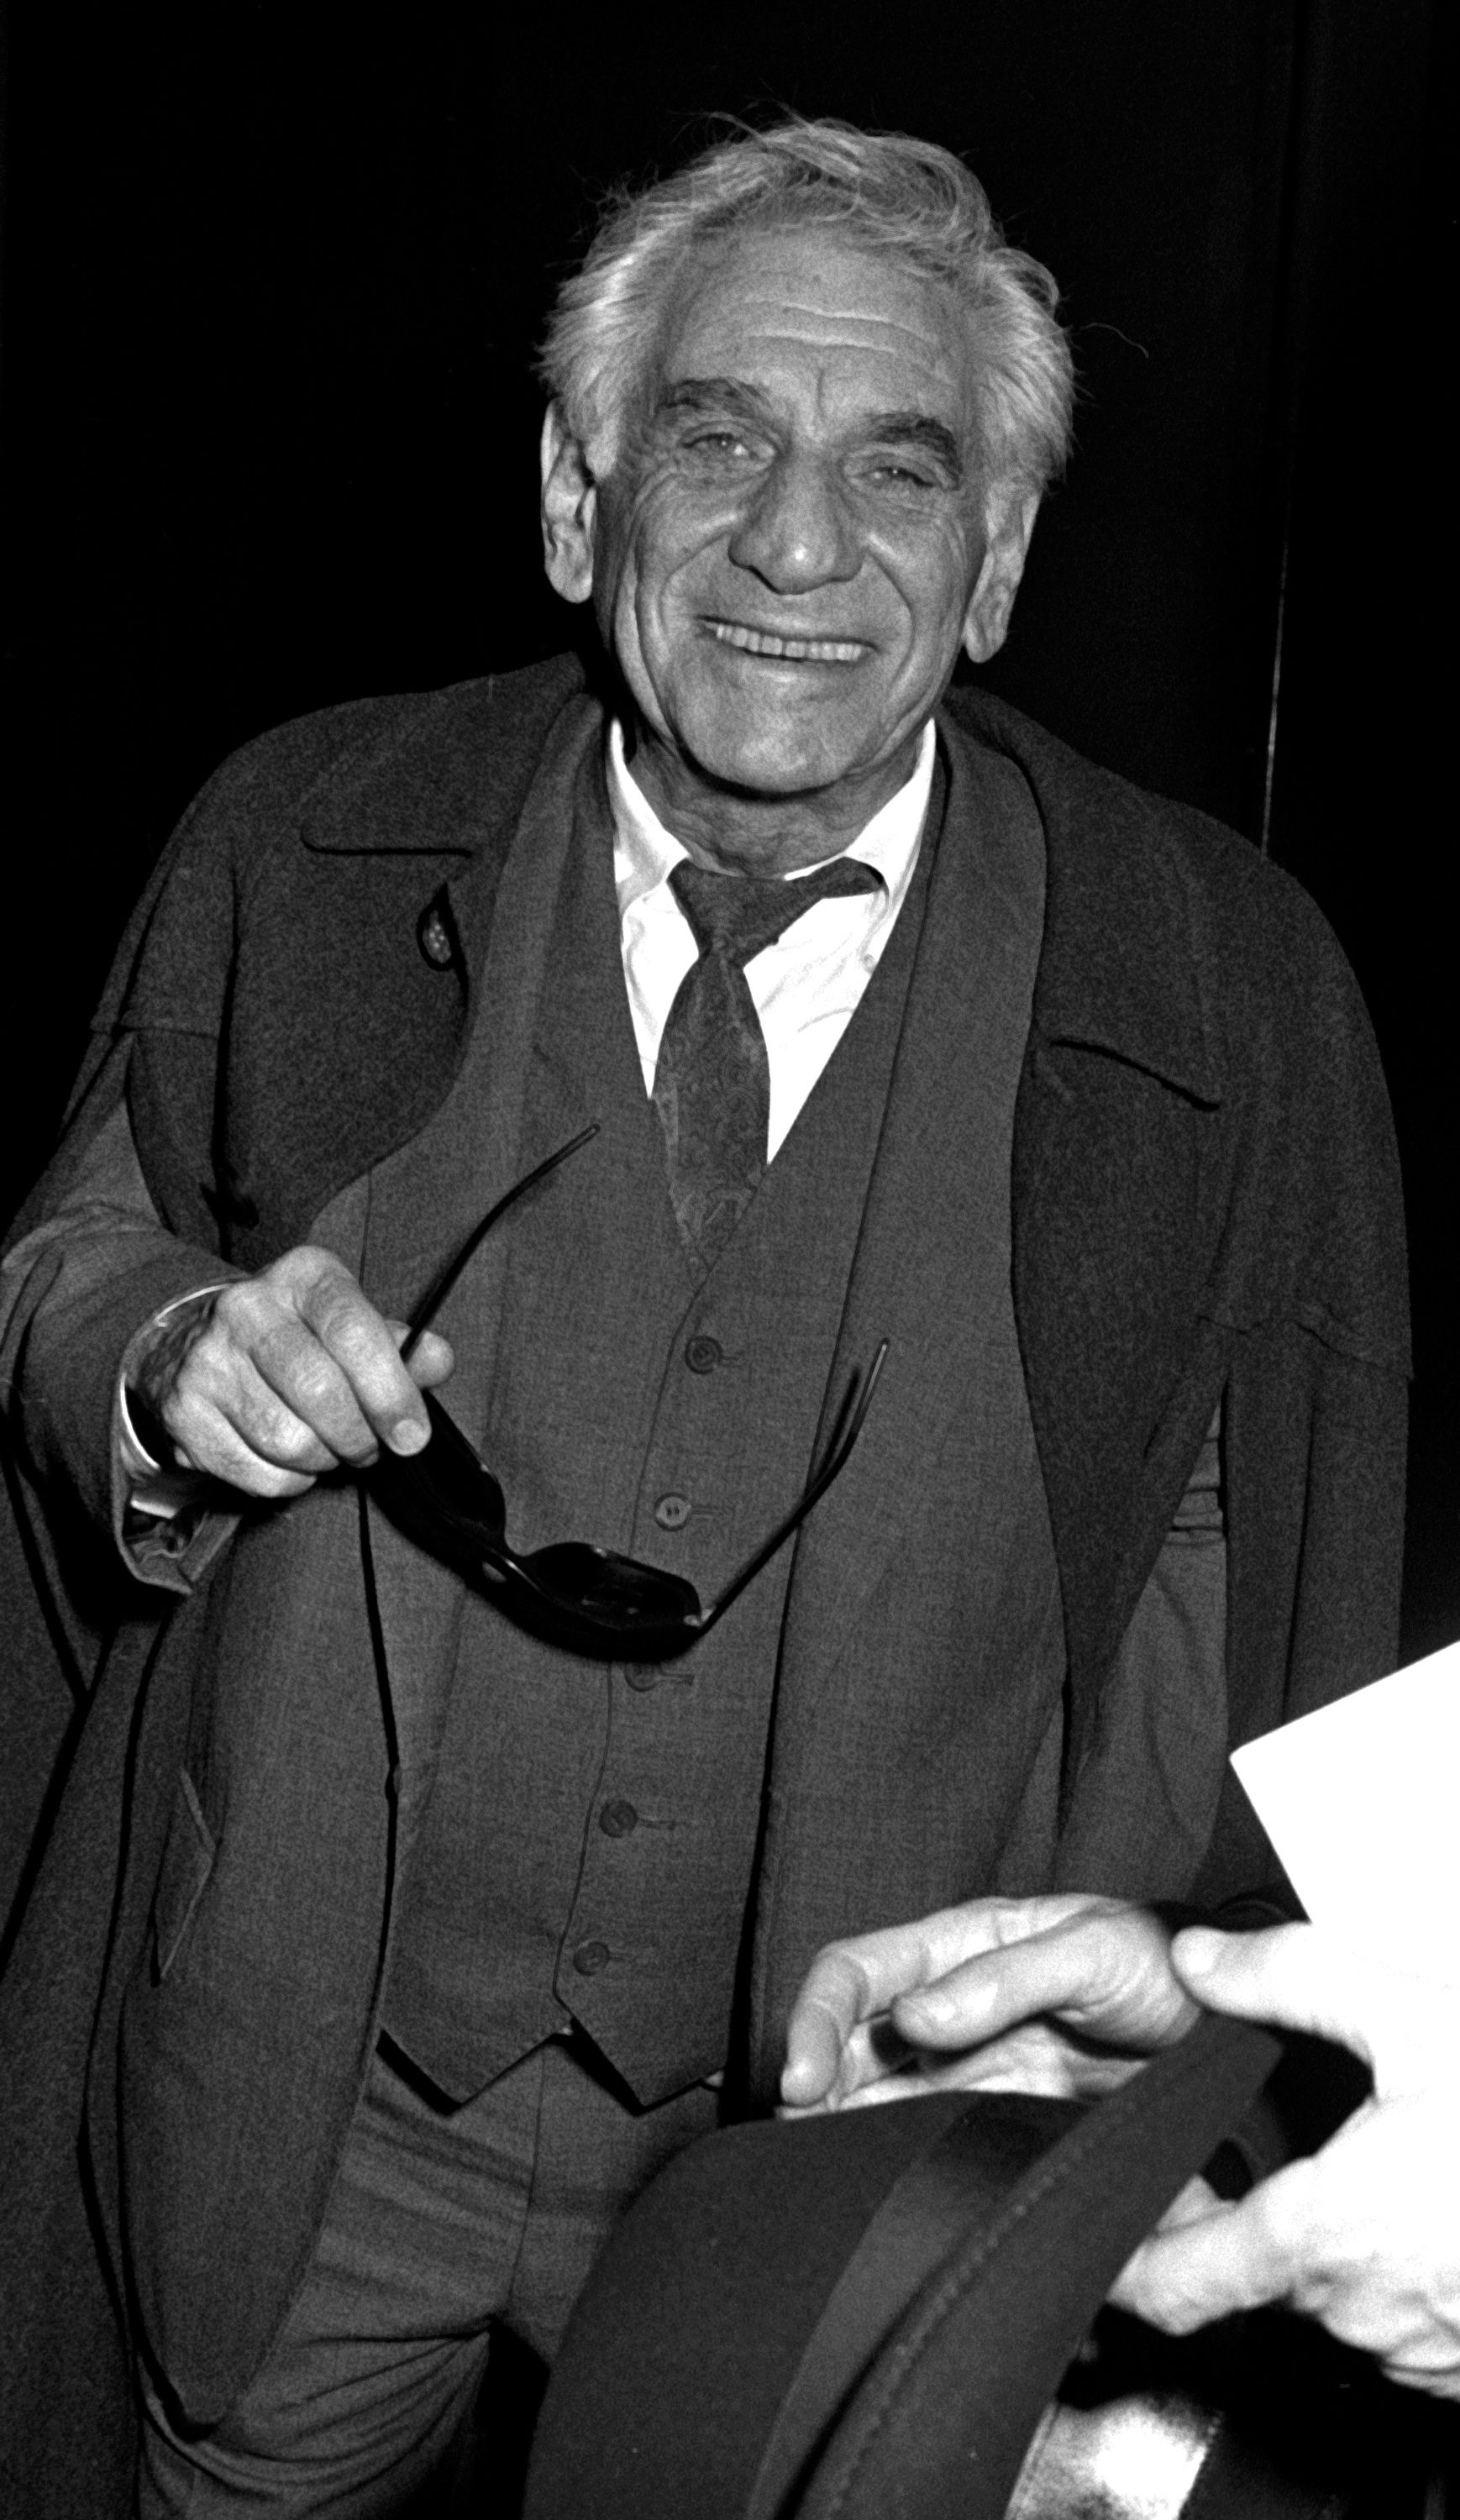 Leonard Bernstein (Orchestrator)